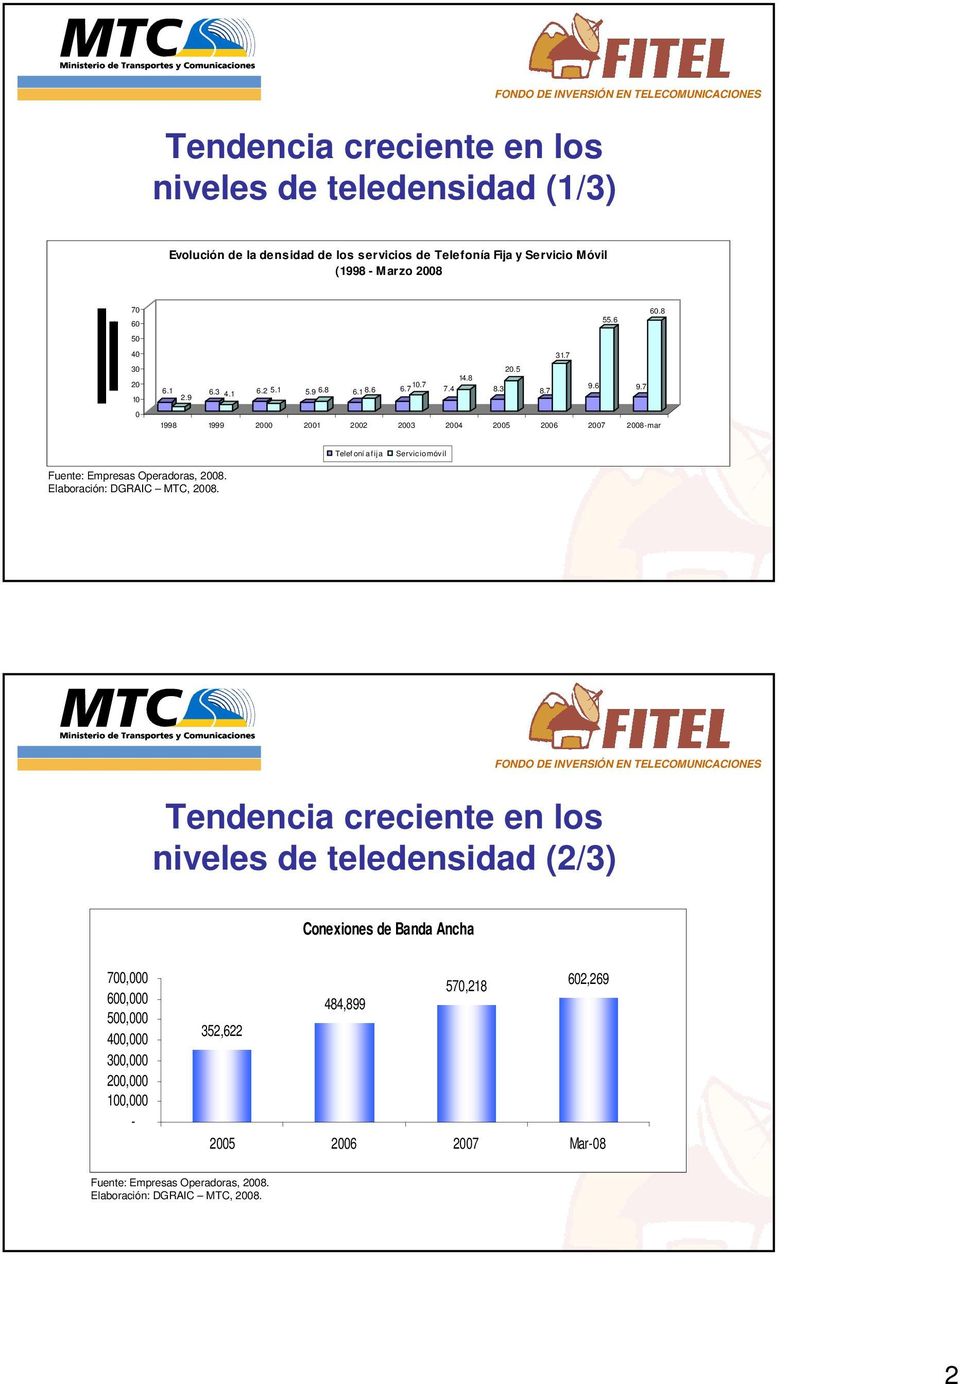 7 0 1998 1999 2000 2001 2002 2003 2004 2005 2006 2007 2008-mar Telef oní a f ija Servicio móvil Fuente: Empresas Operadoras, 2008. Elaboración: DGRAIC MTC, 2008.